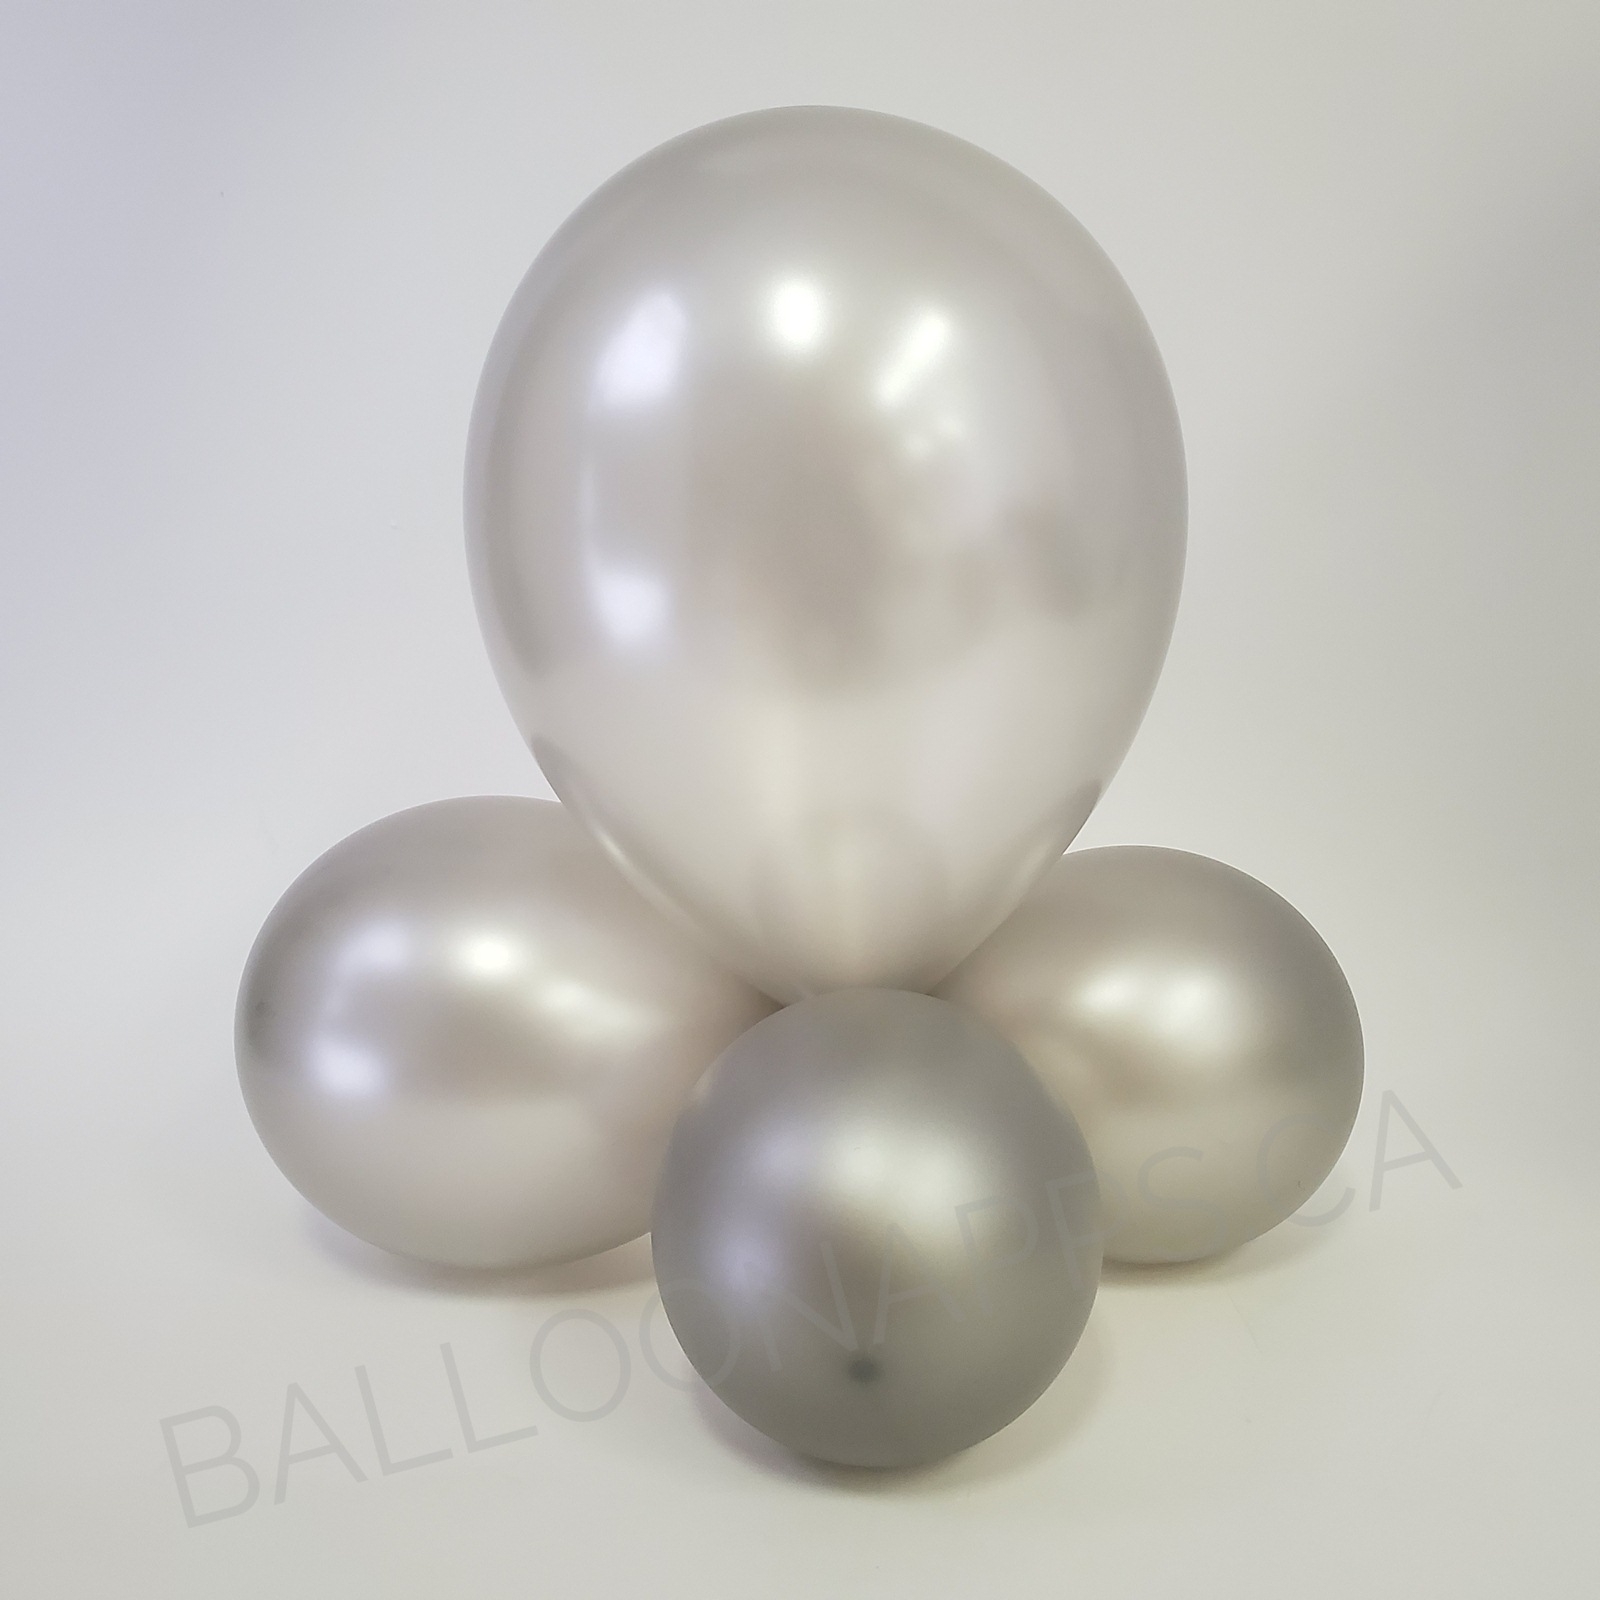 balloon texture BET (100) 160 Metallic Silver balloons